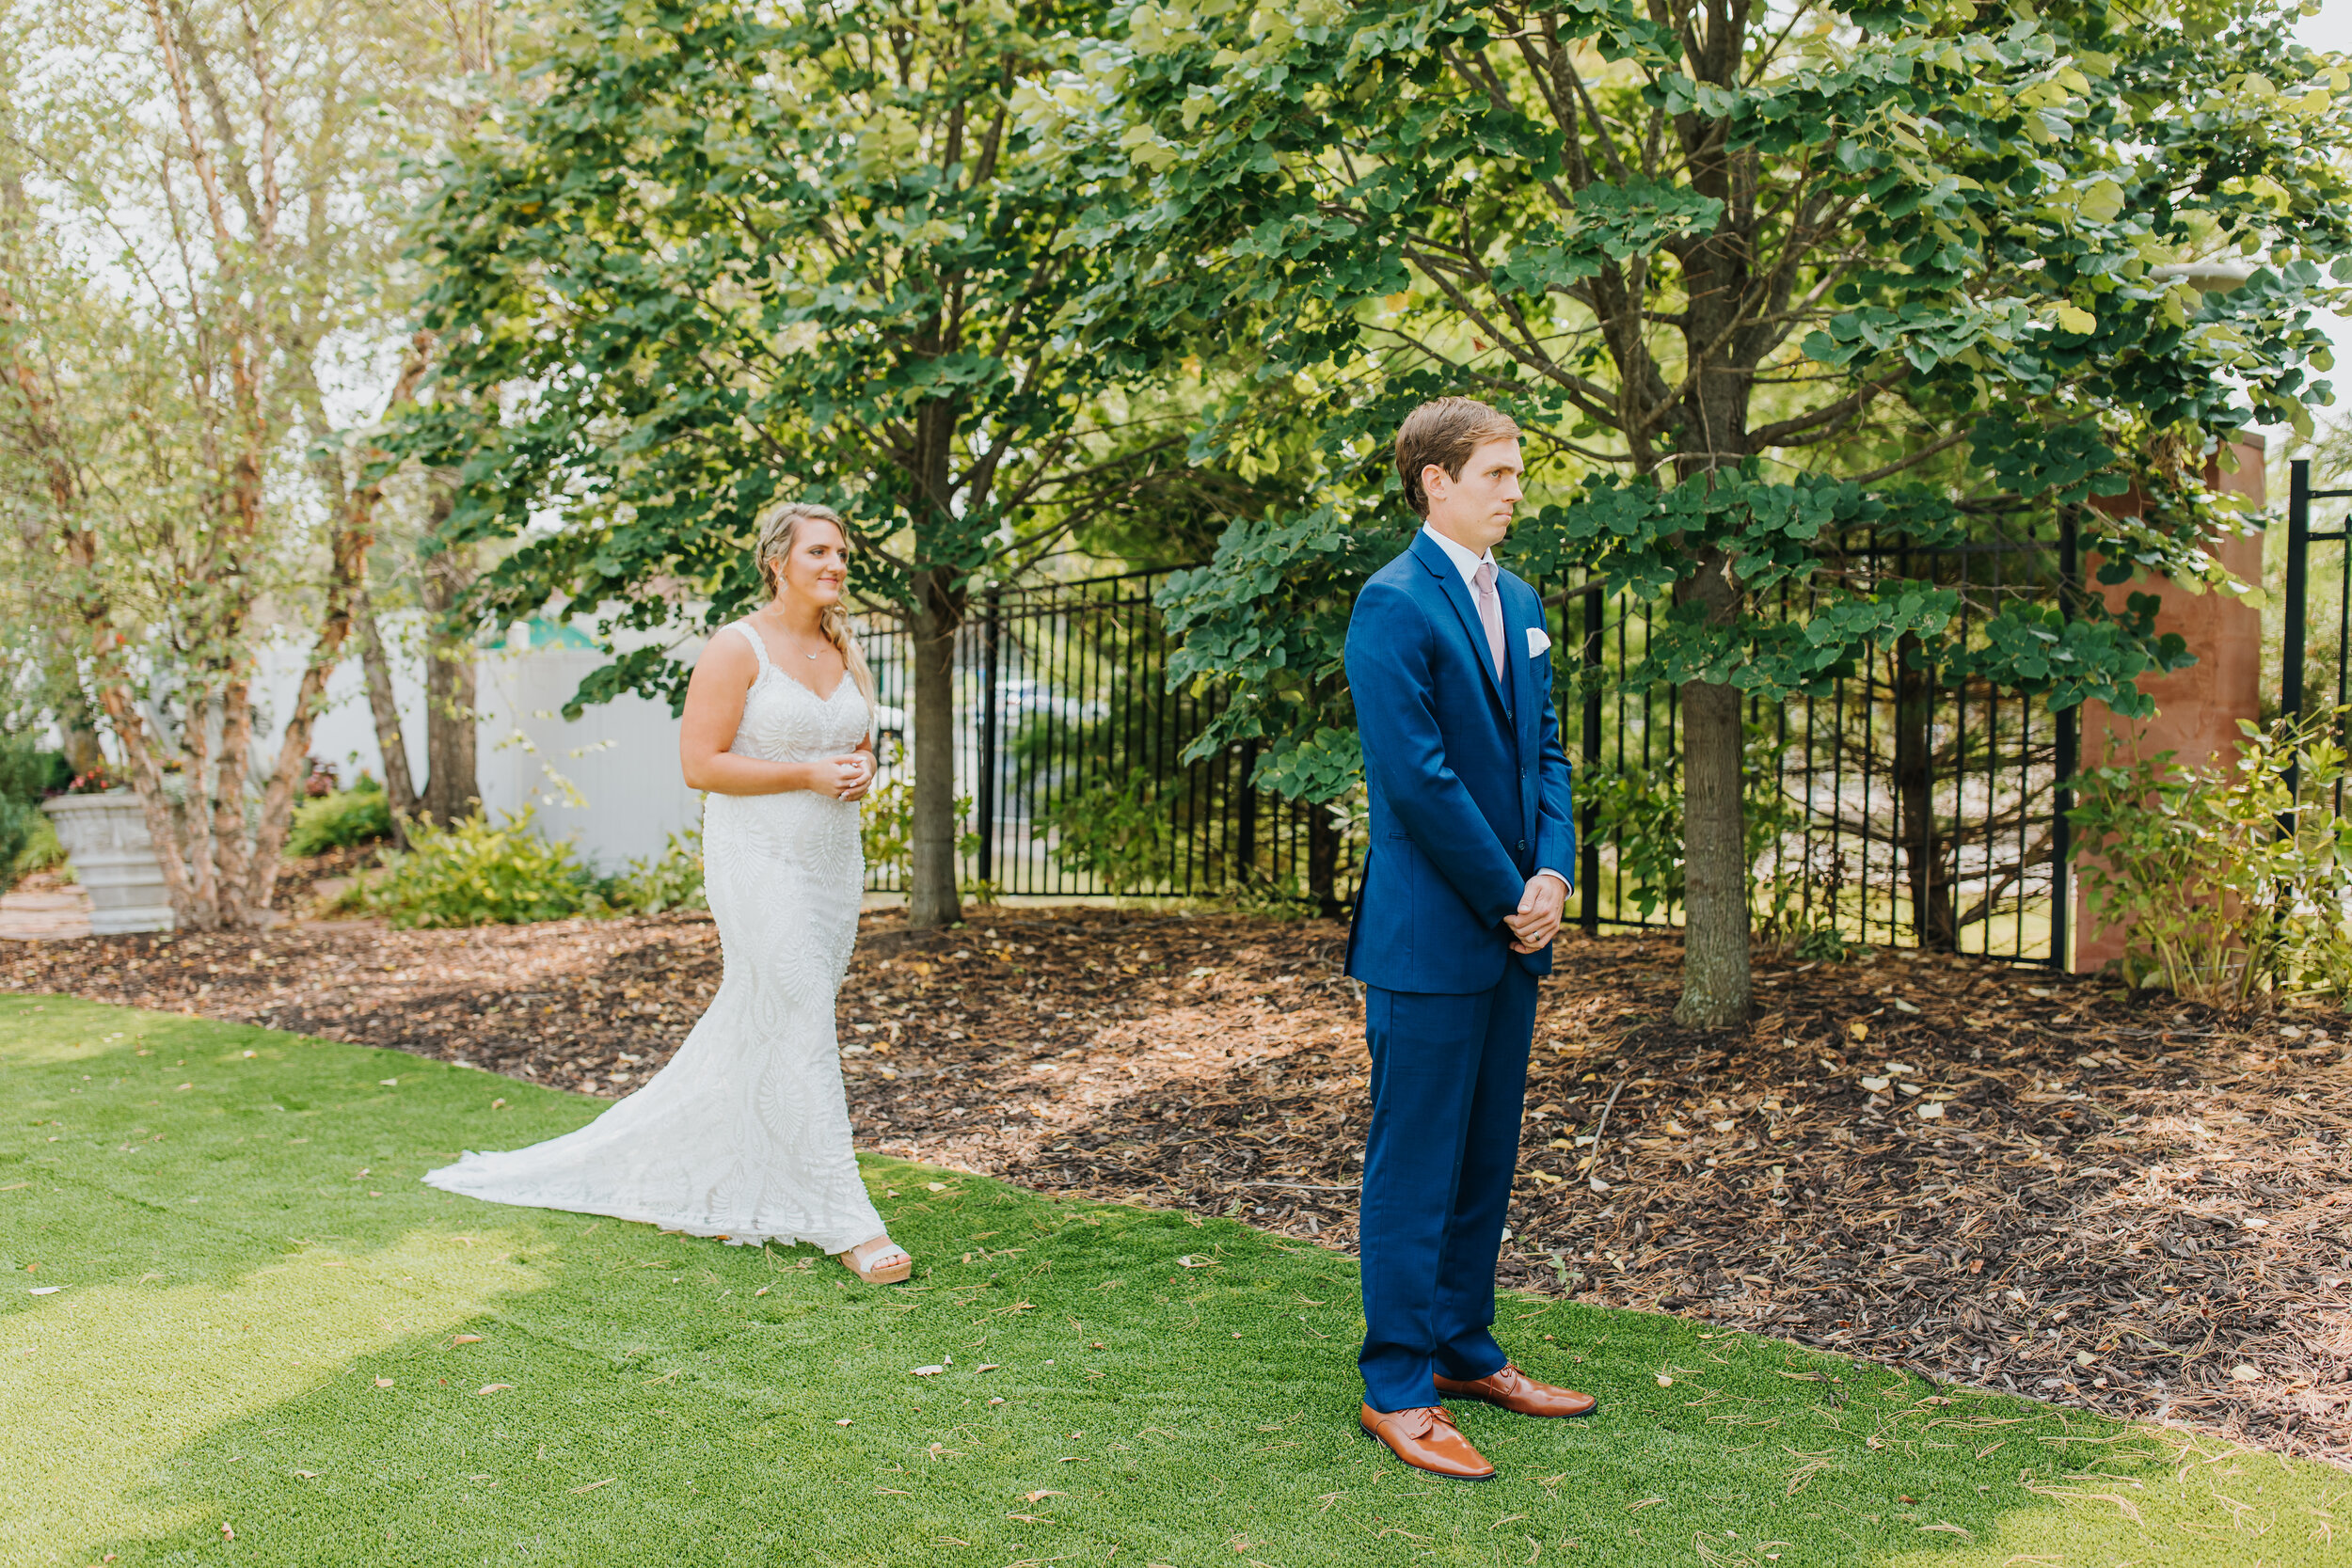 Ashton & Dan - Married - Nathaniel Jensen Photography - Omaha Nebraska Wedding Photographer-100.jpg